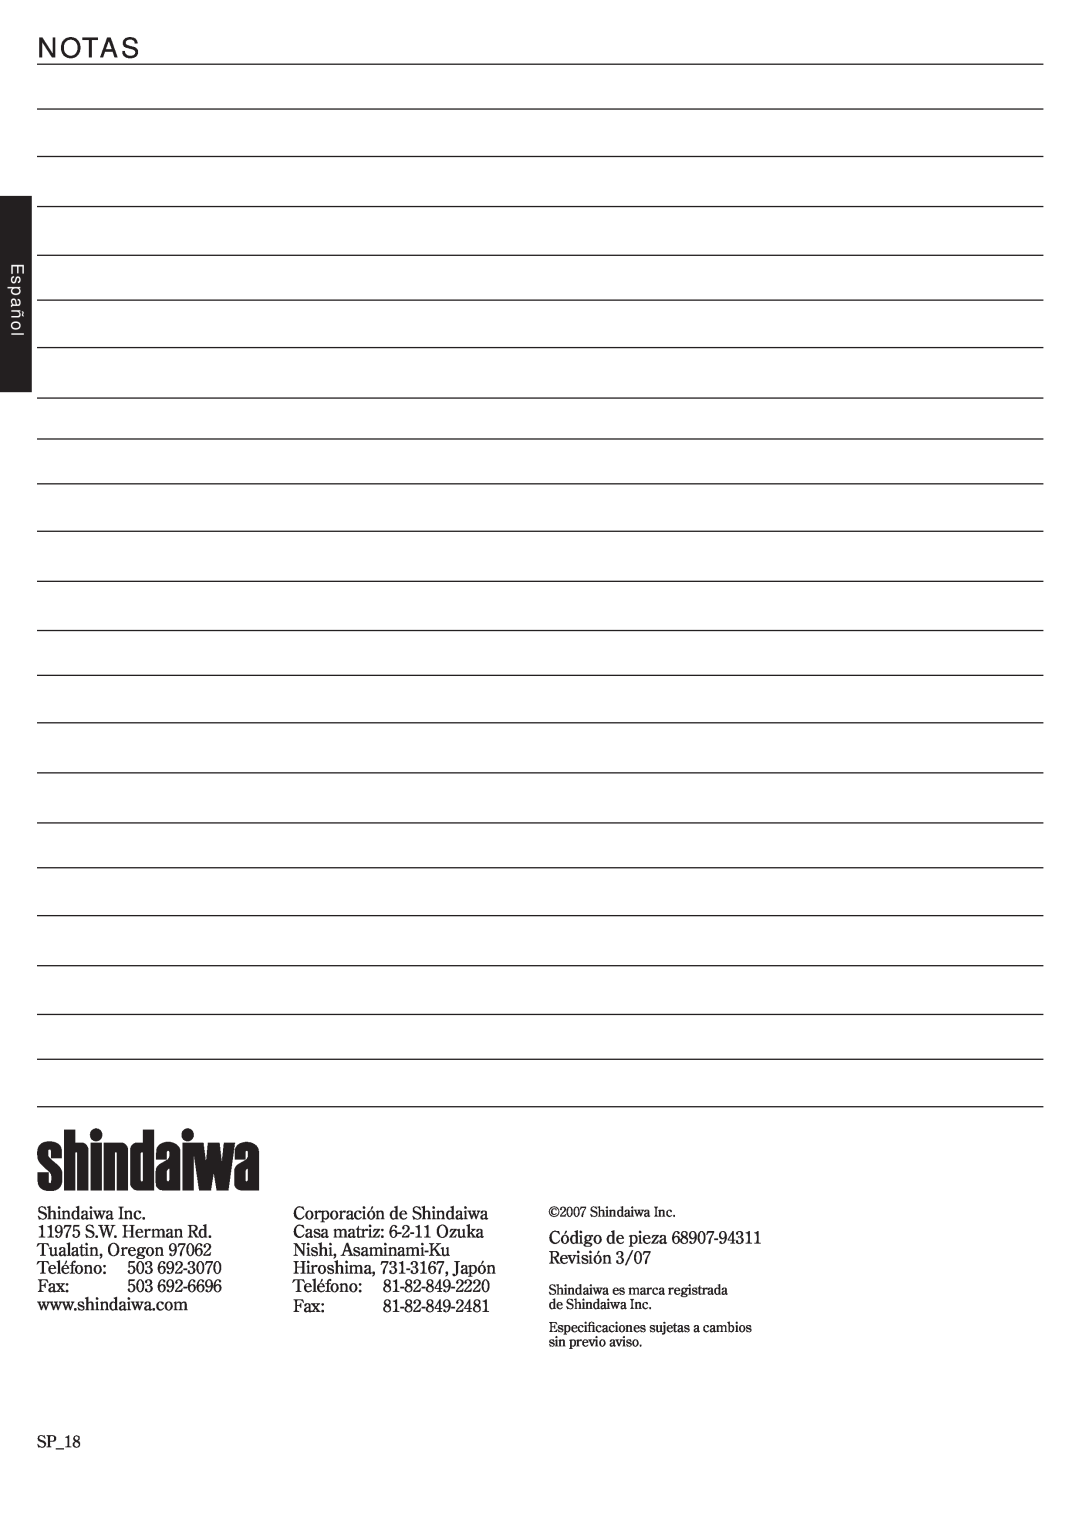 Shindaiwa EB3410/EVC, EB2510/EVC, 68907-94311 manual Notas, Español, Shindaiwa Inc 